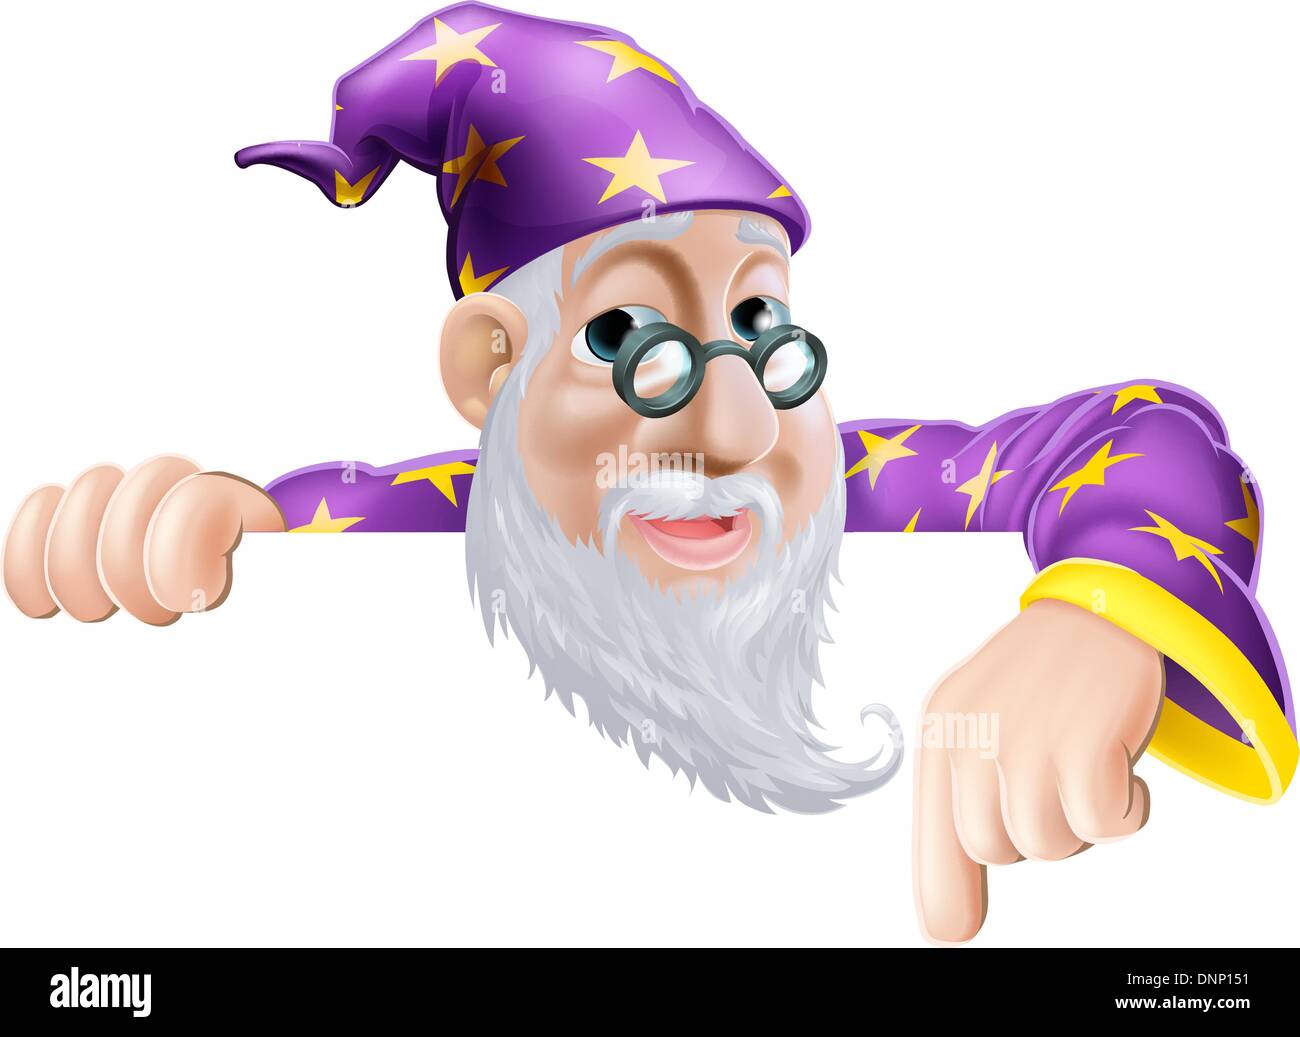 Una illustrazione di un simpatico friendly old wizard carattere al di sopra di un segno o un banner con la punta rivolta verso il basso in corrispondenza di essa Illustrazione Vettoriale